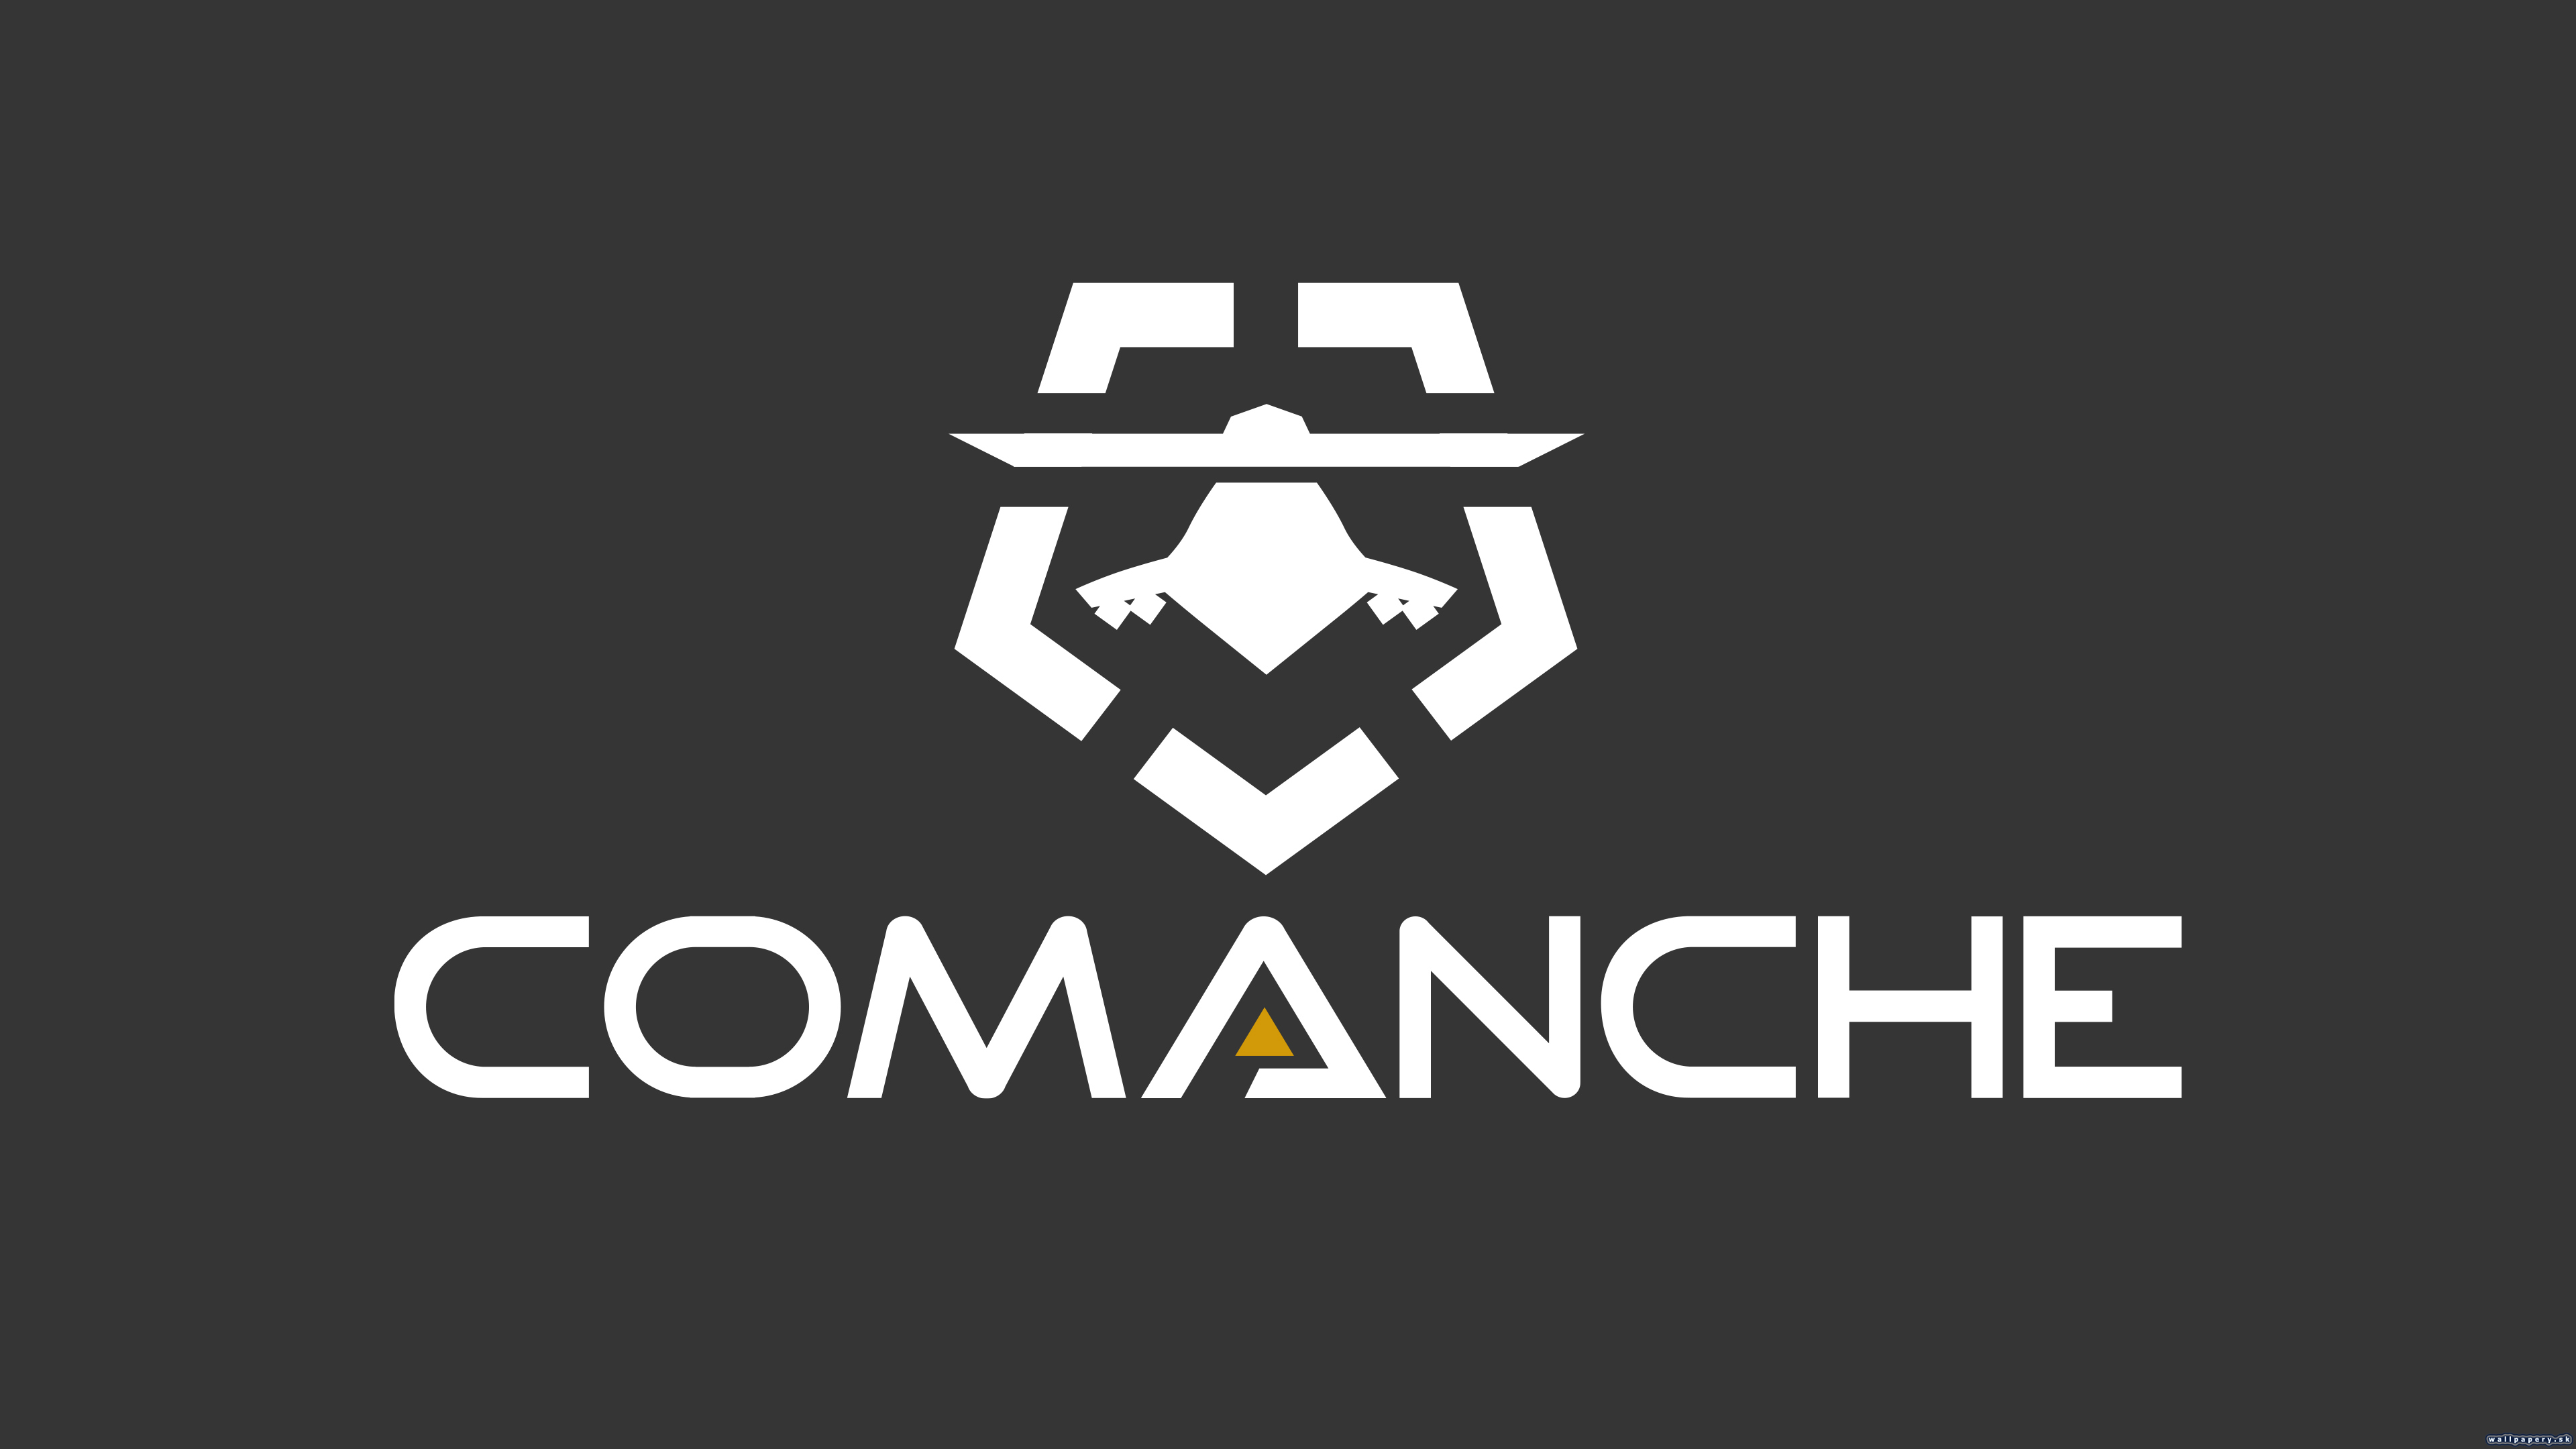 Comanche - wallpaper 4